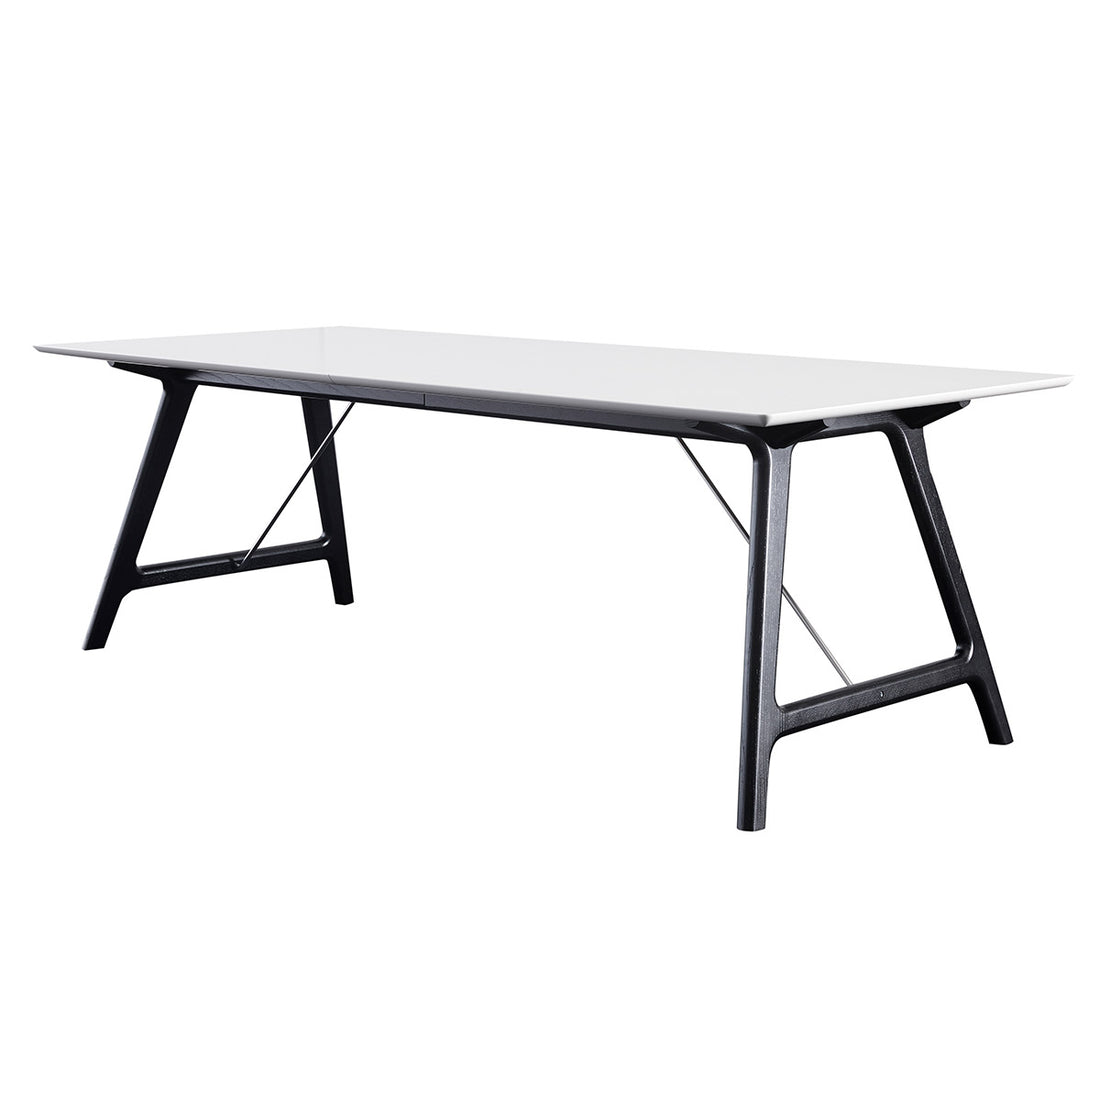 Andersen Furniture T7 udtræksbord i hvid laminat - understel i sort - 95x220xH72,5 cm - DesignGaragen.dk.